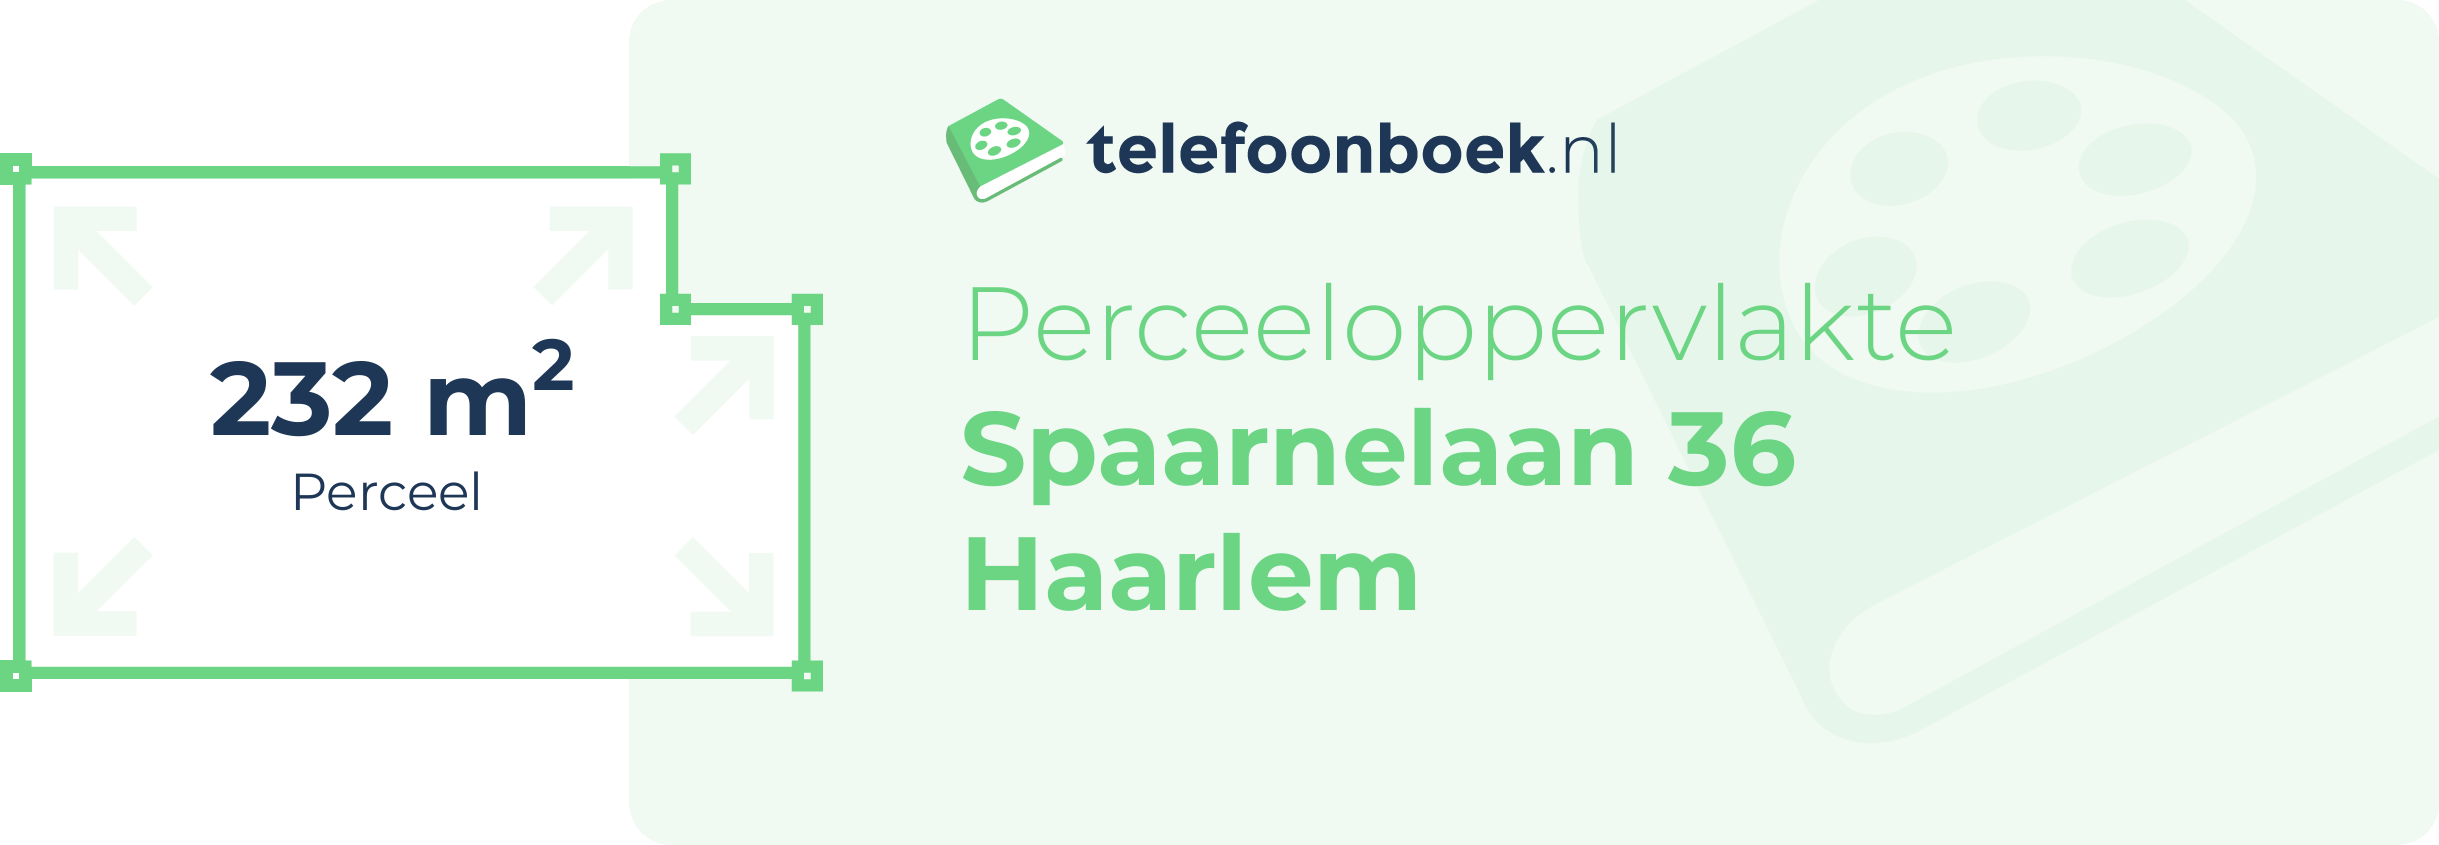 Perceeloppervlakte Spaarnelaan 36 Haarlem